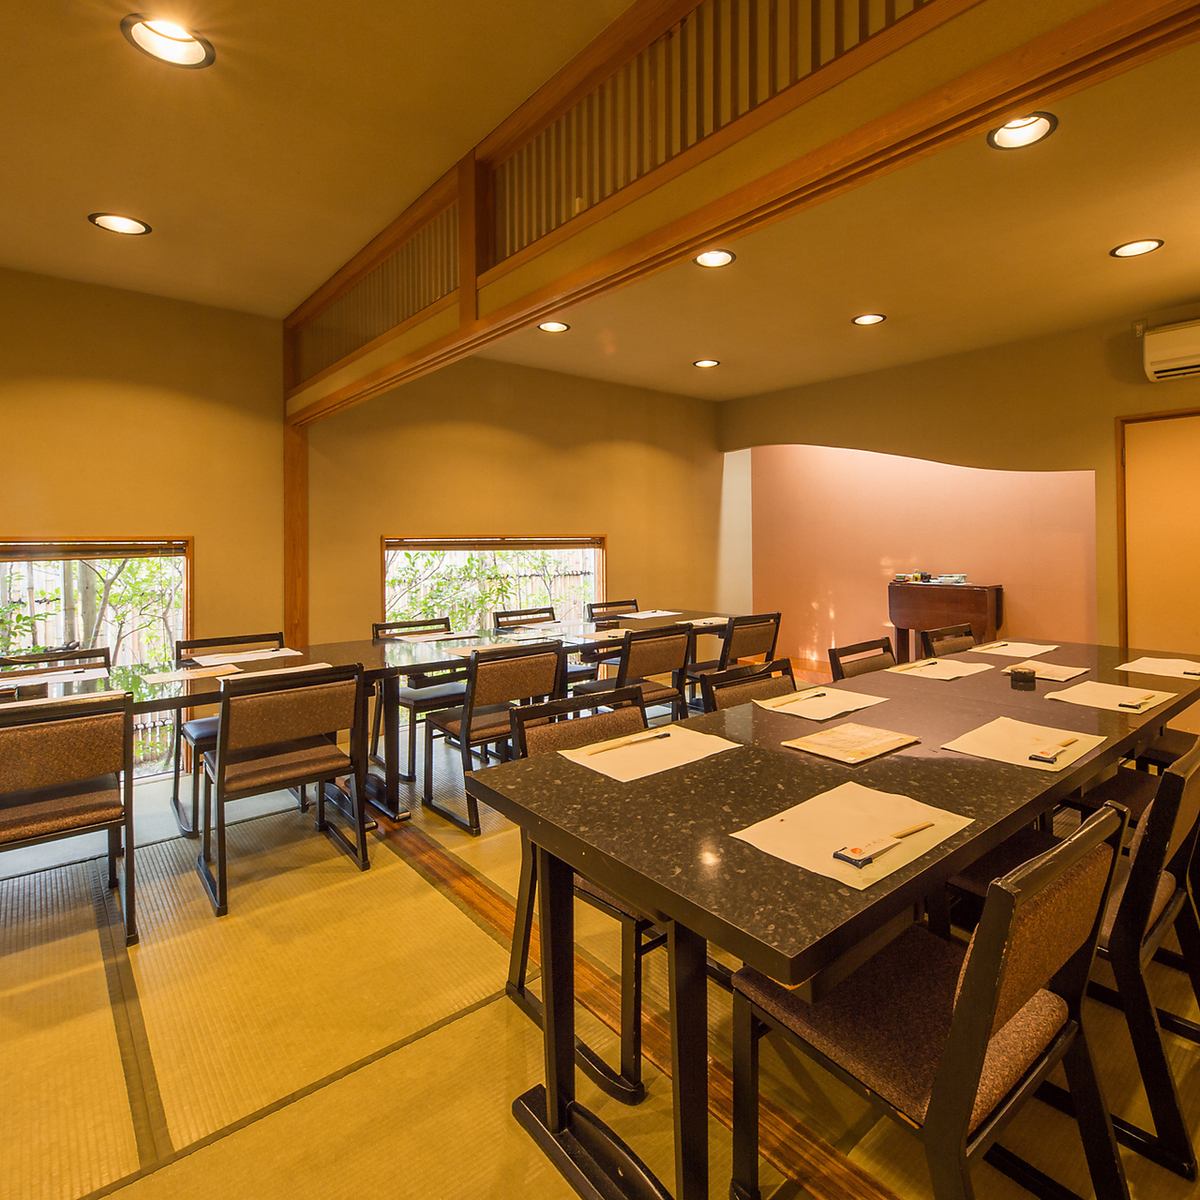 일본식 세련된 개인실에서 요리와 술을 즐길 수 있습니다.